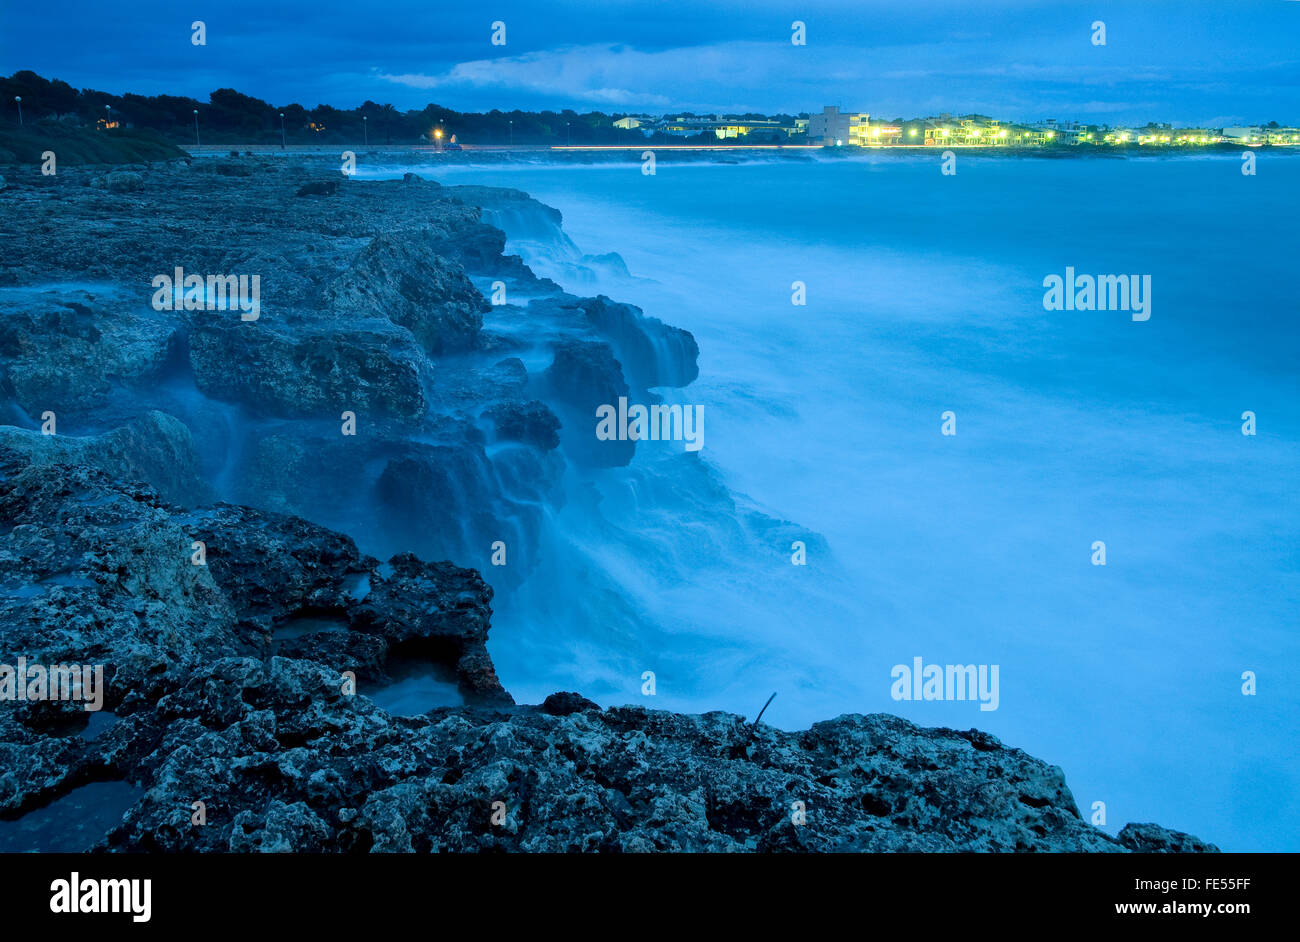 Europa, Isole Baleari Spagna, Maiorca, Estanyol. rock costa, shore, mare litorale, Cliff, Foto Stock